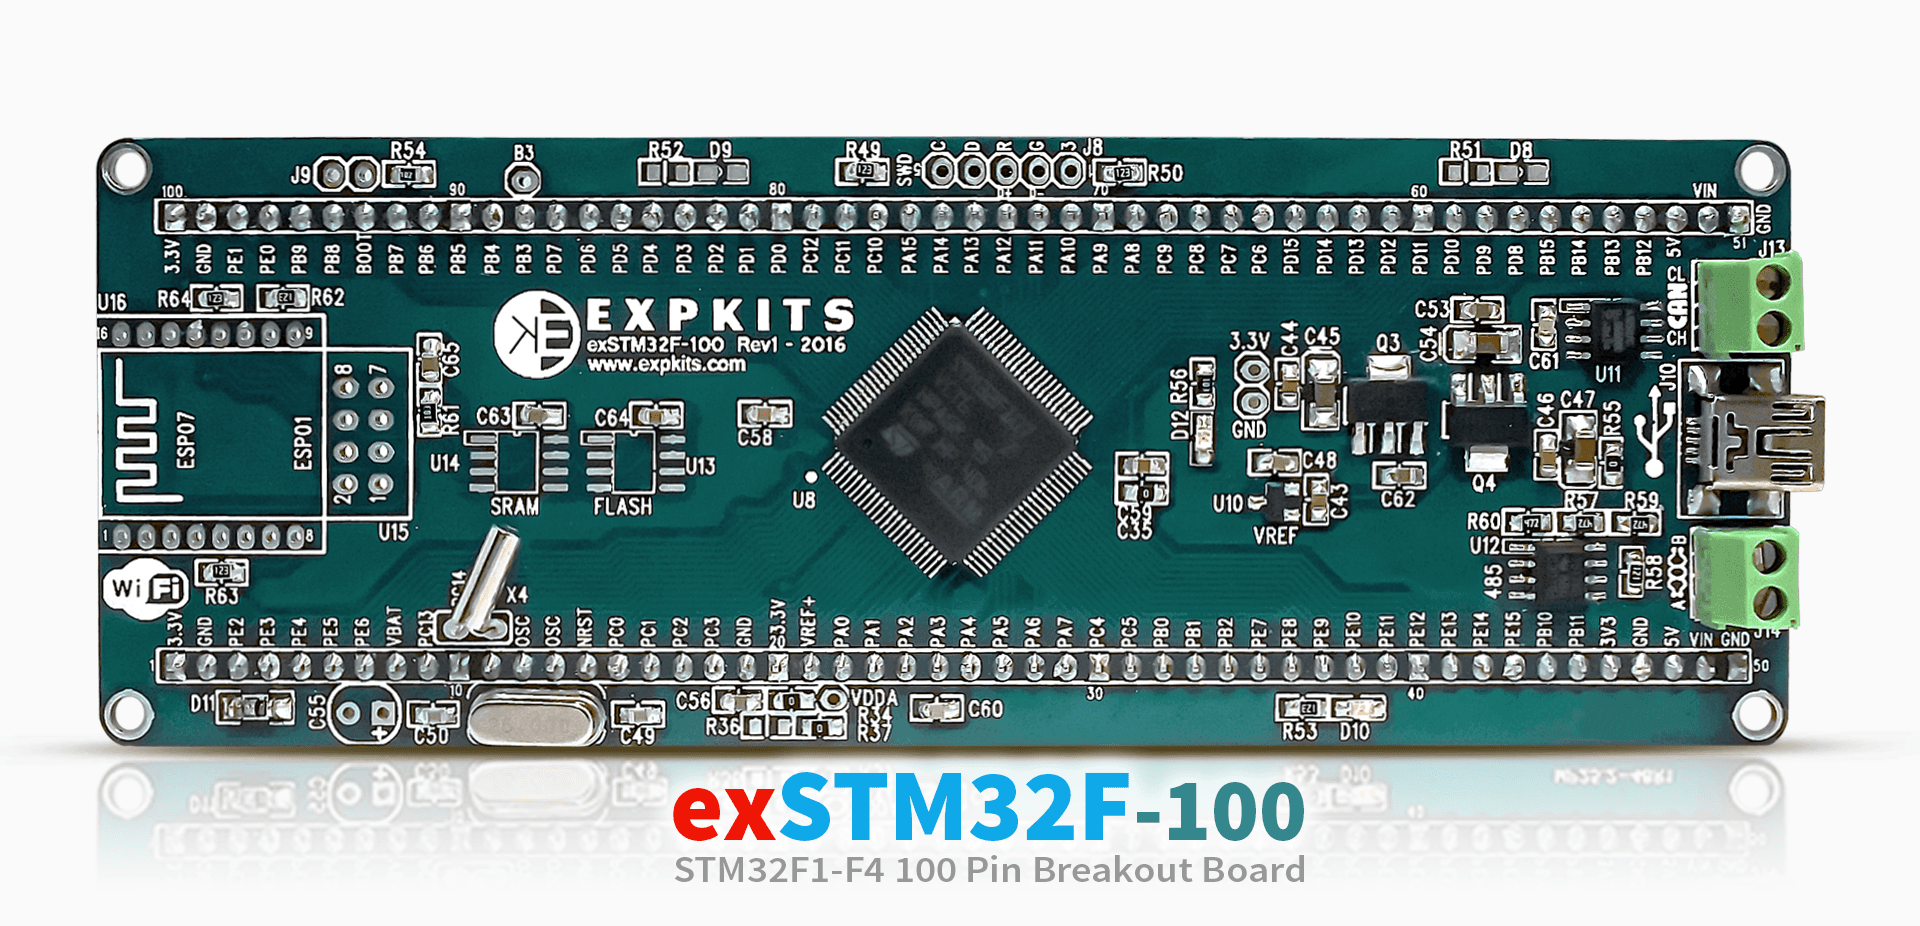 exSTM32F-100 100 pin STM32 F1 and F4 Series MCU Development Board